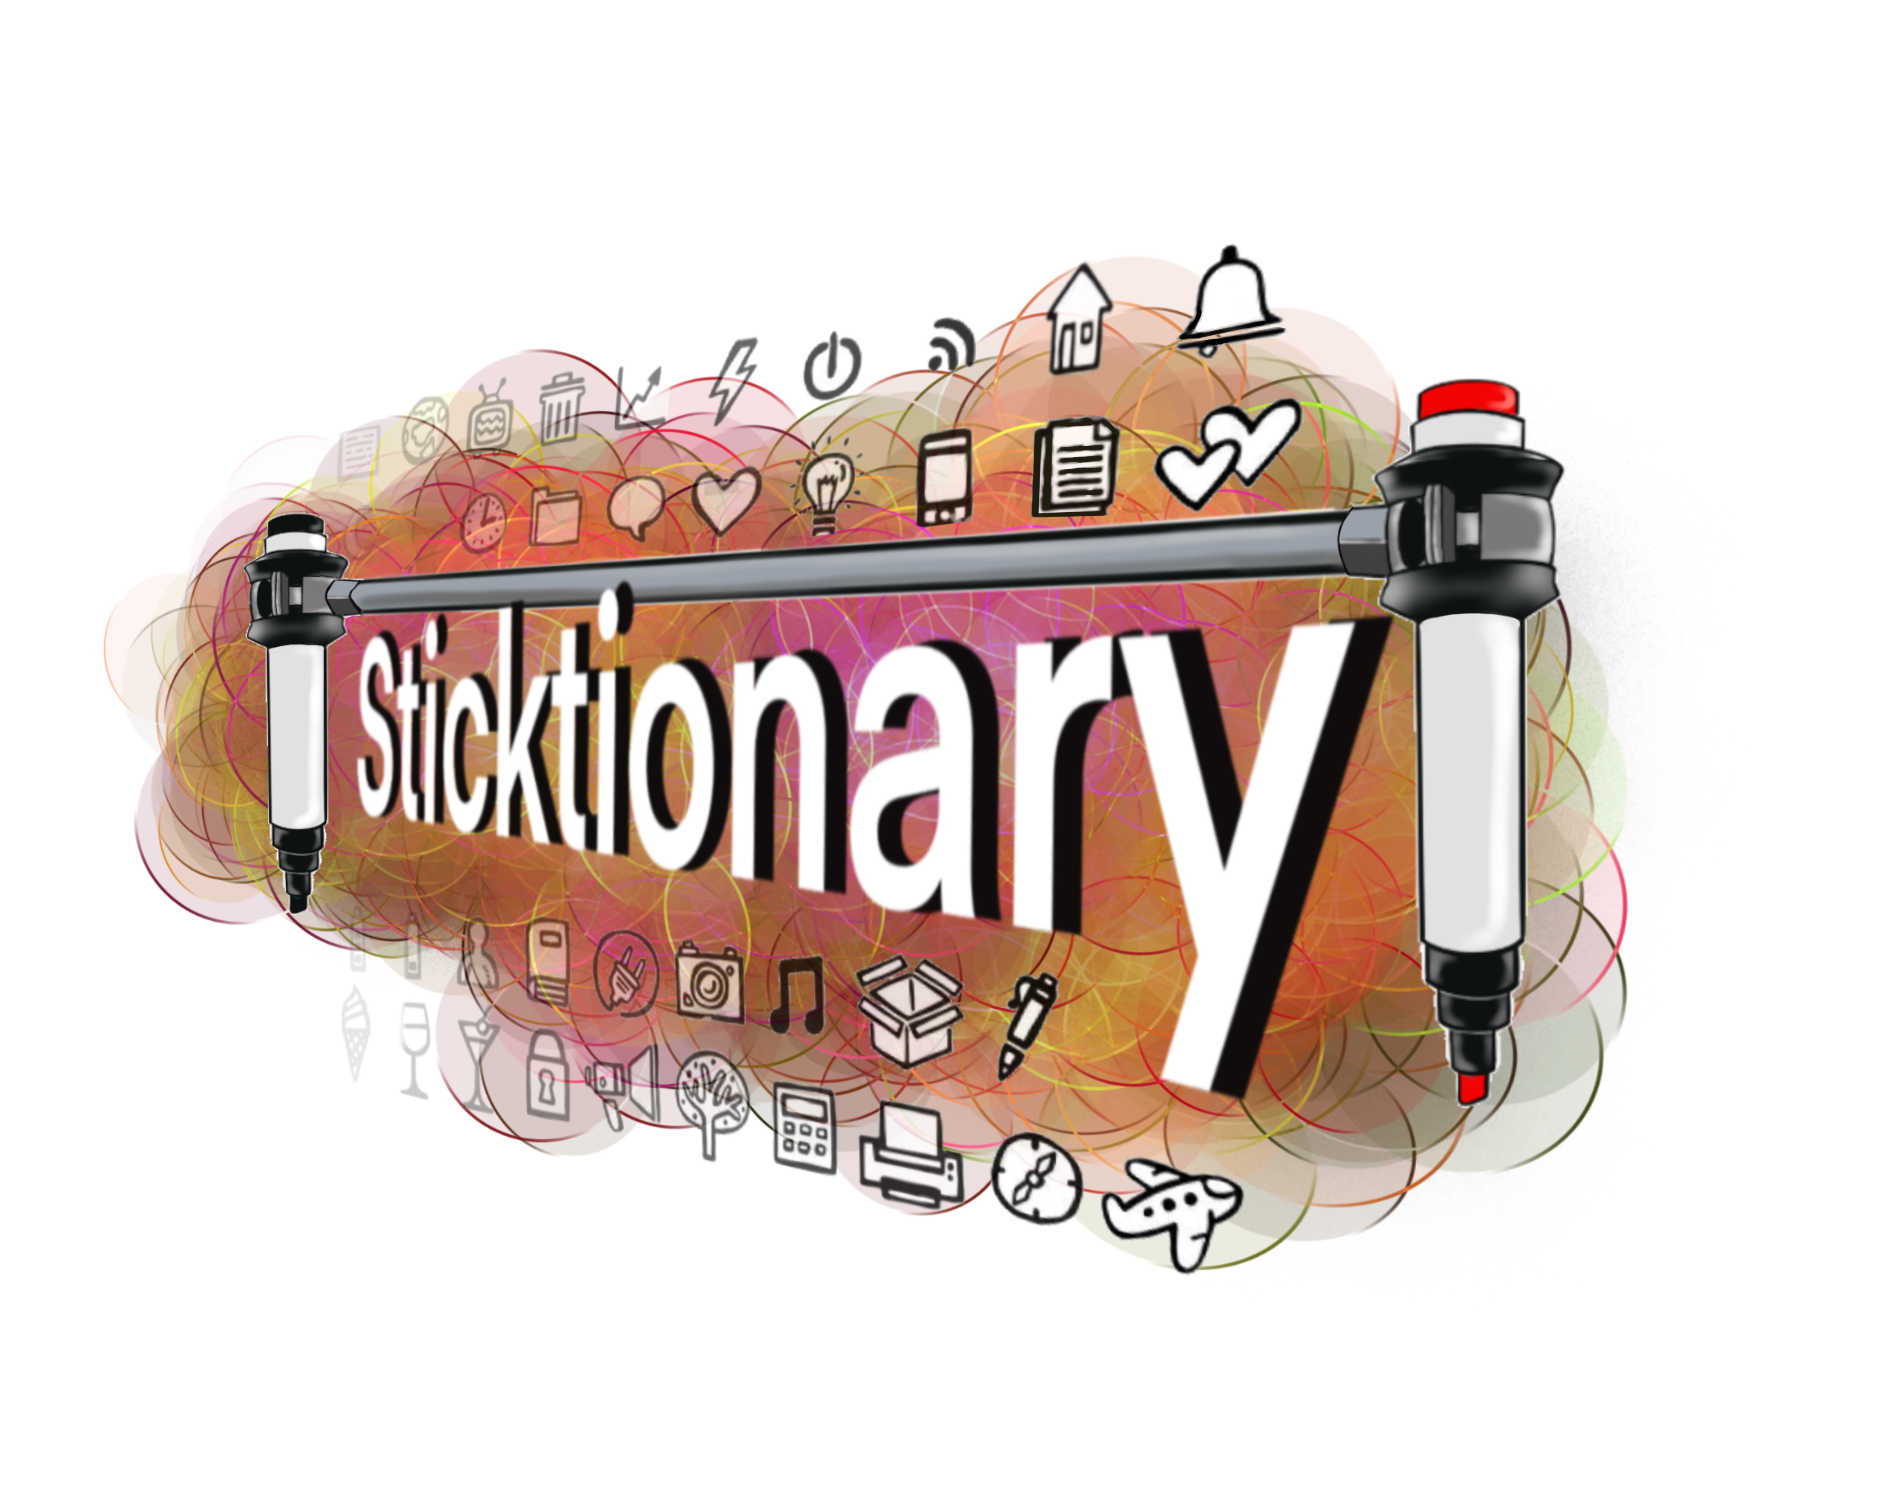 Sticktionary